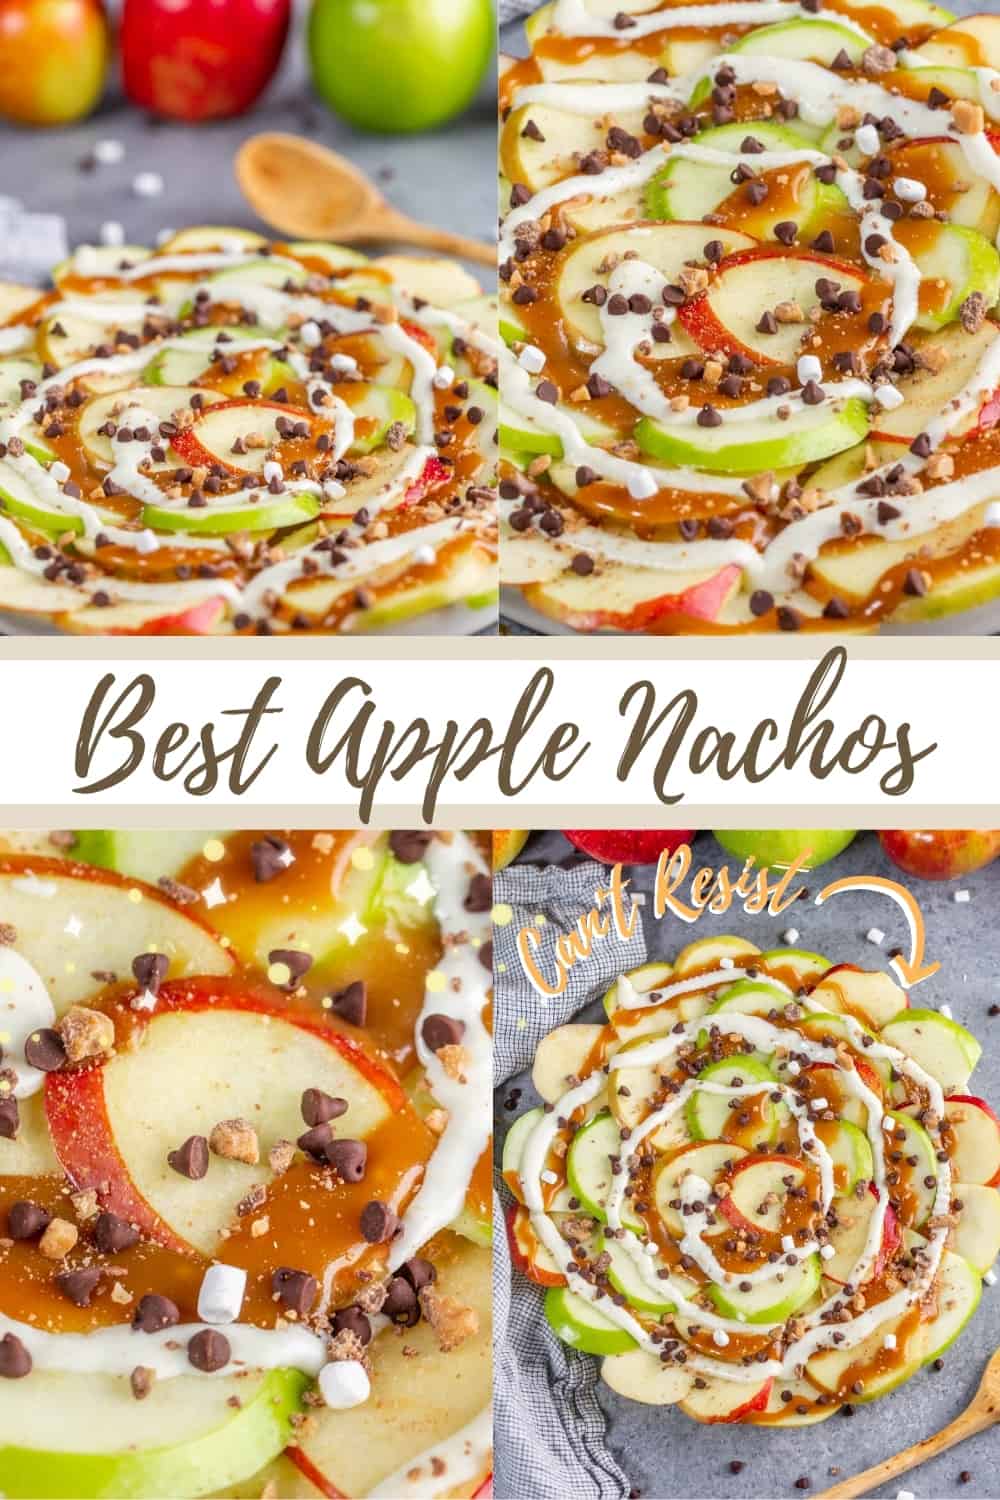 The Best Apple Nachos